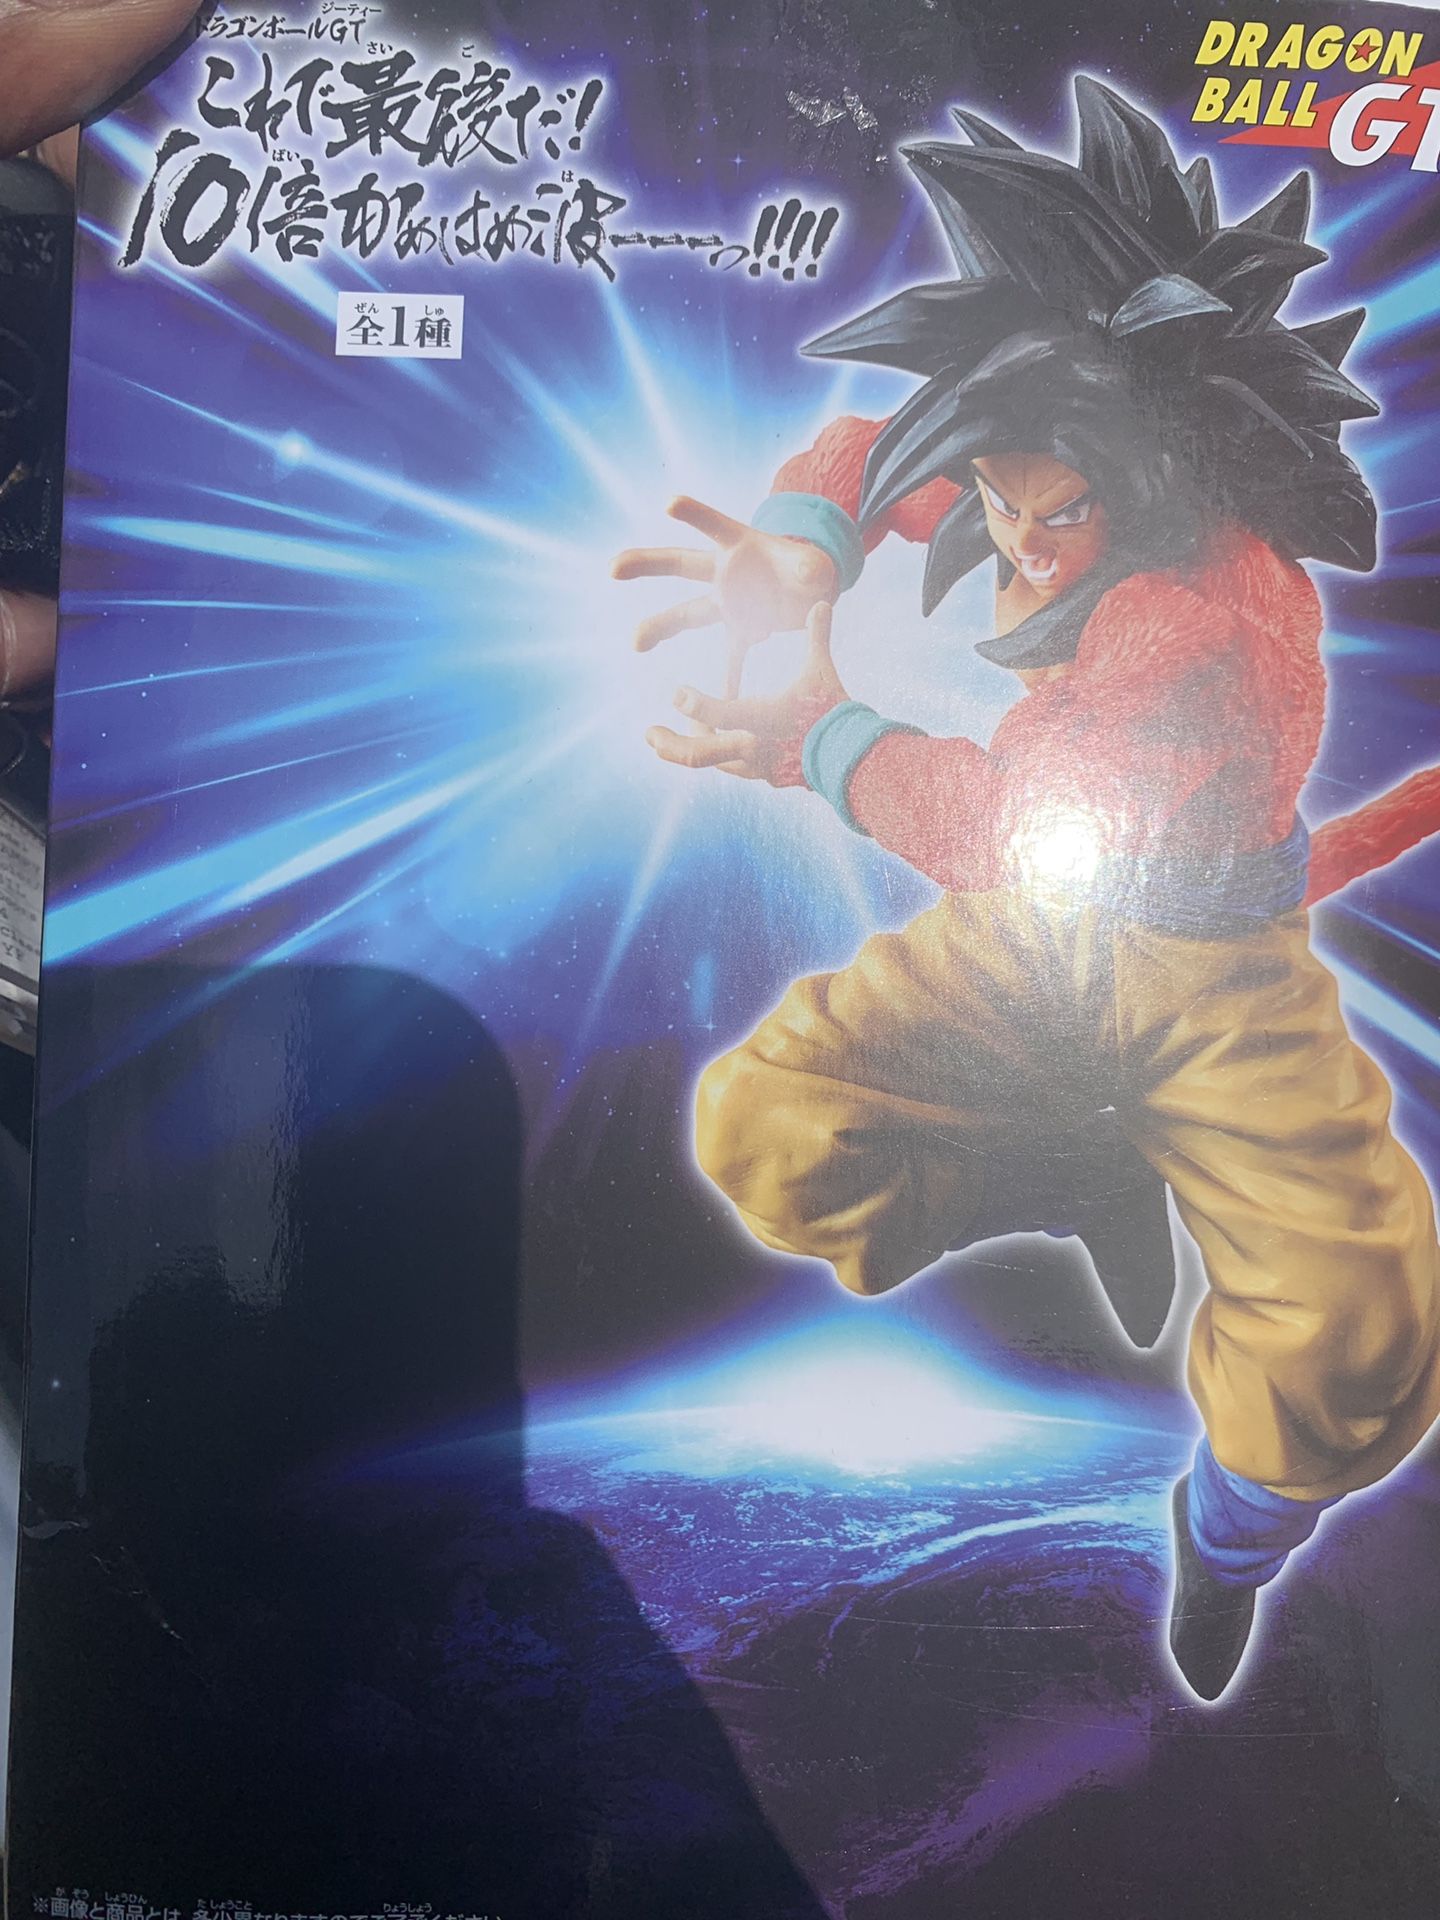 Super Saiyan 4 Goku Statue